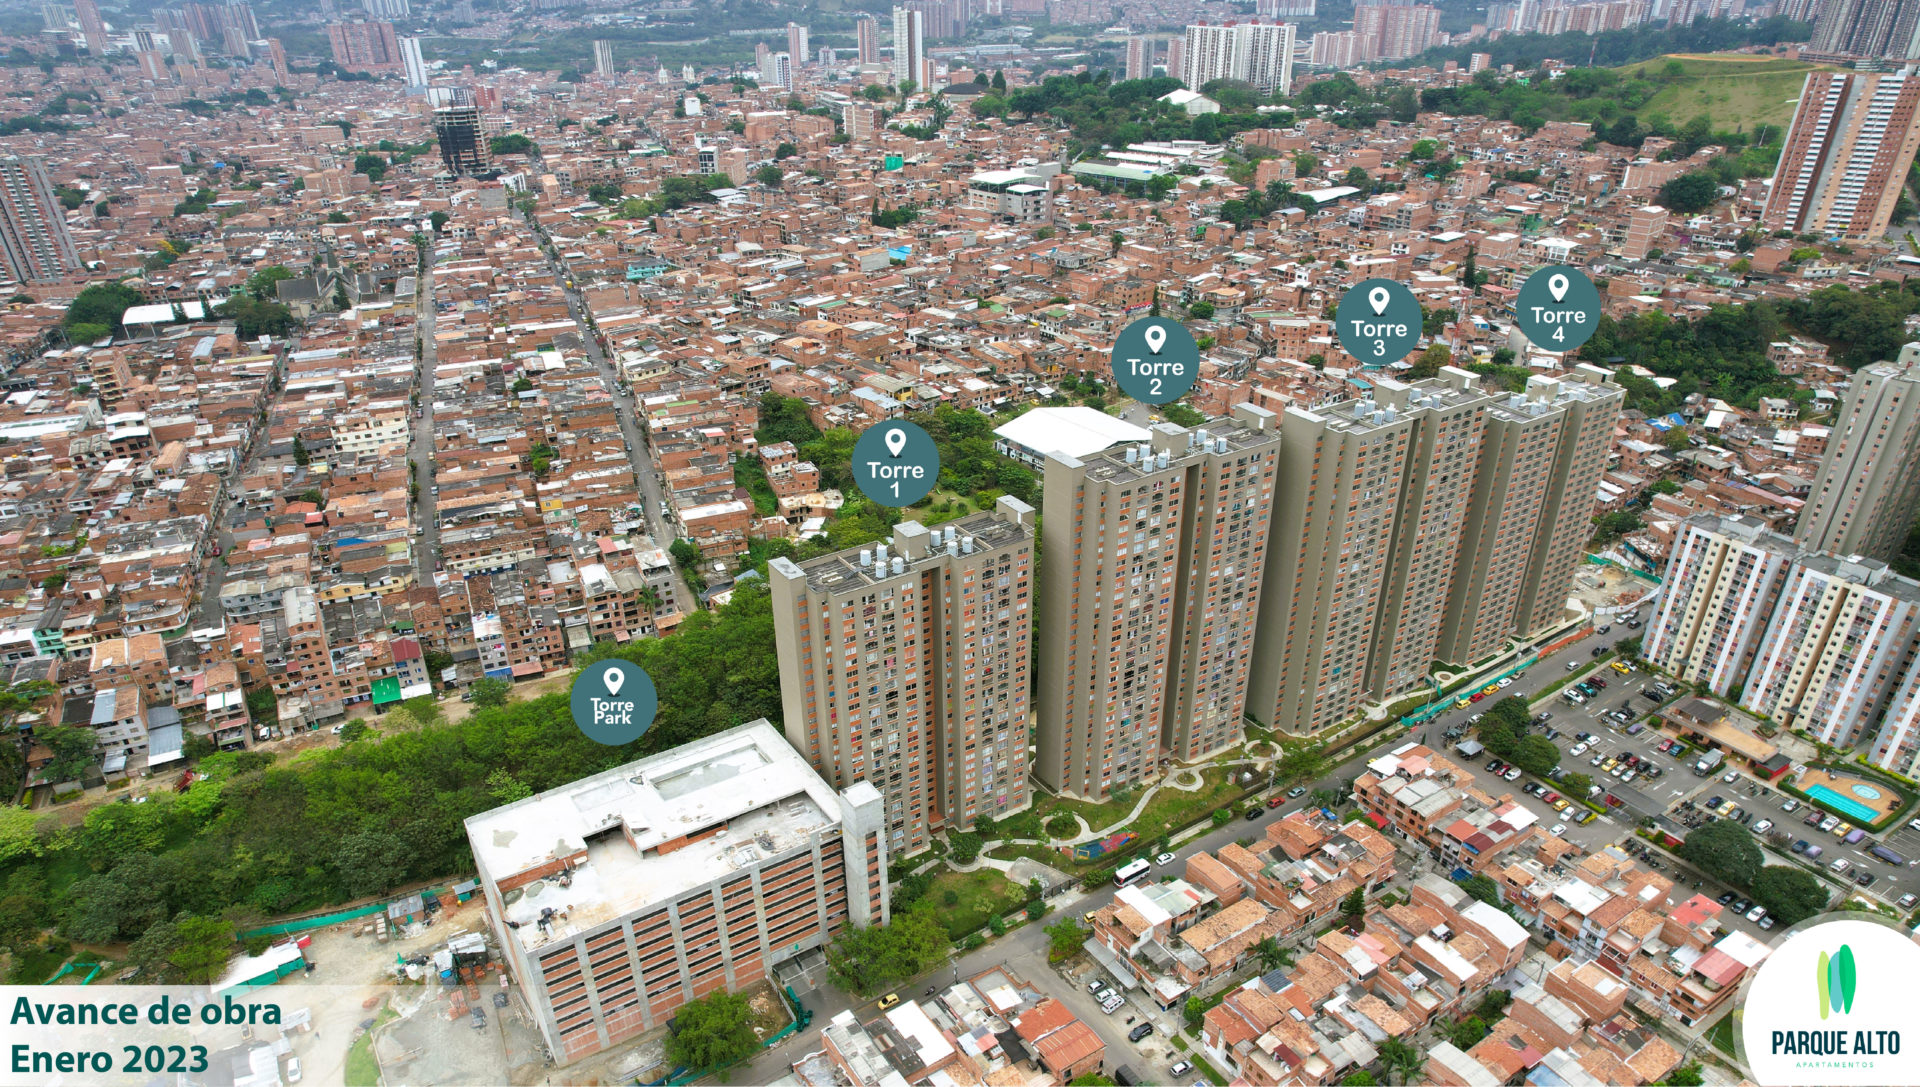 Viviendas, Apartamentos o Casas de Interés Social en Bello. Parque Alto